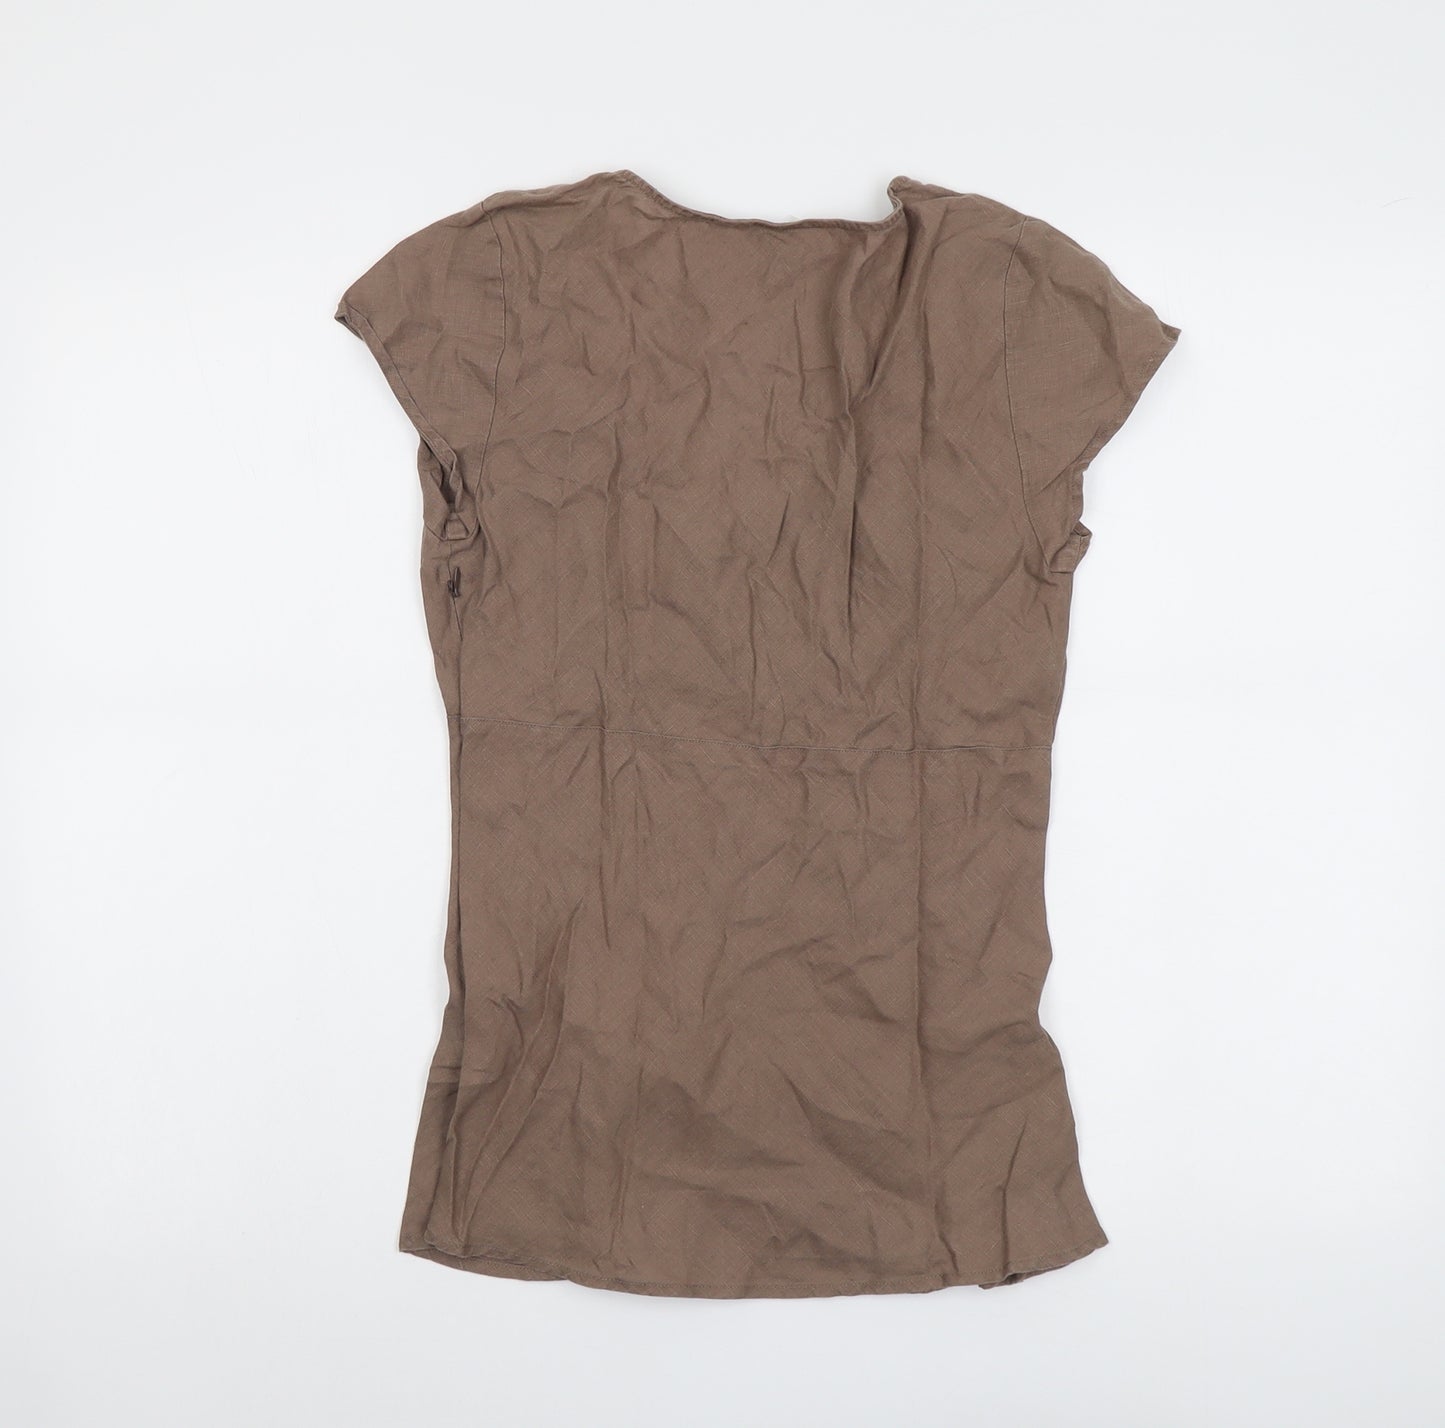 Boden Womens Brown Linen Basic Blouse Size 10 V-Neck